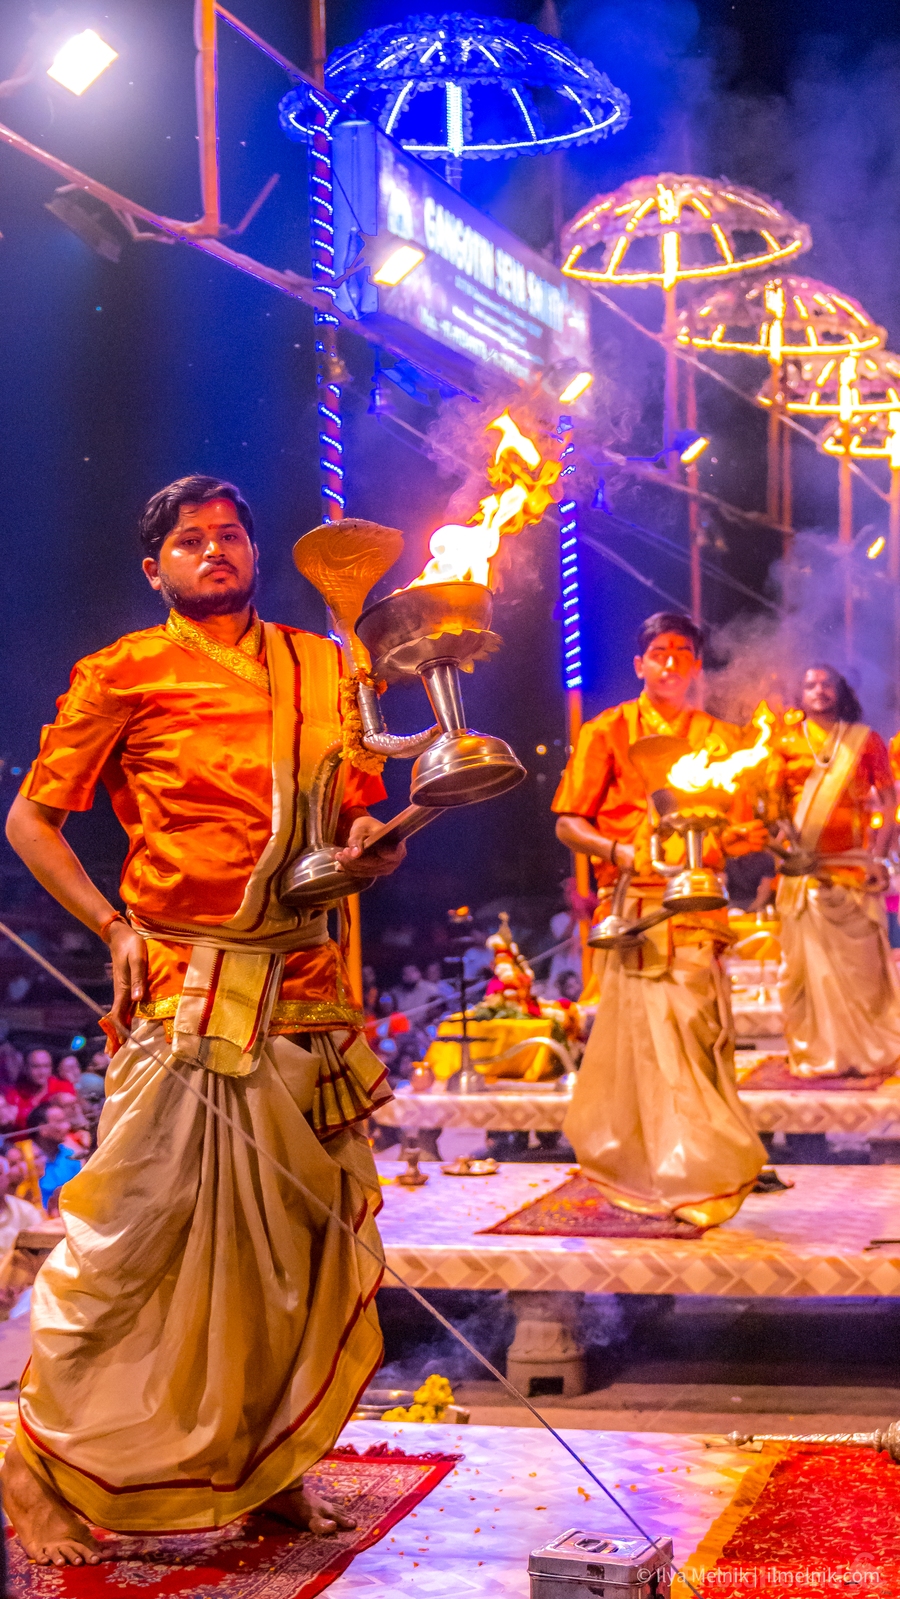 Image of Fire puja or Aarti in Varanasi by Ilya Melnik